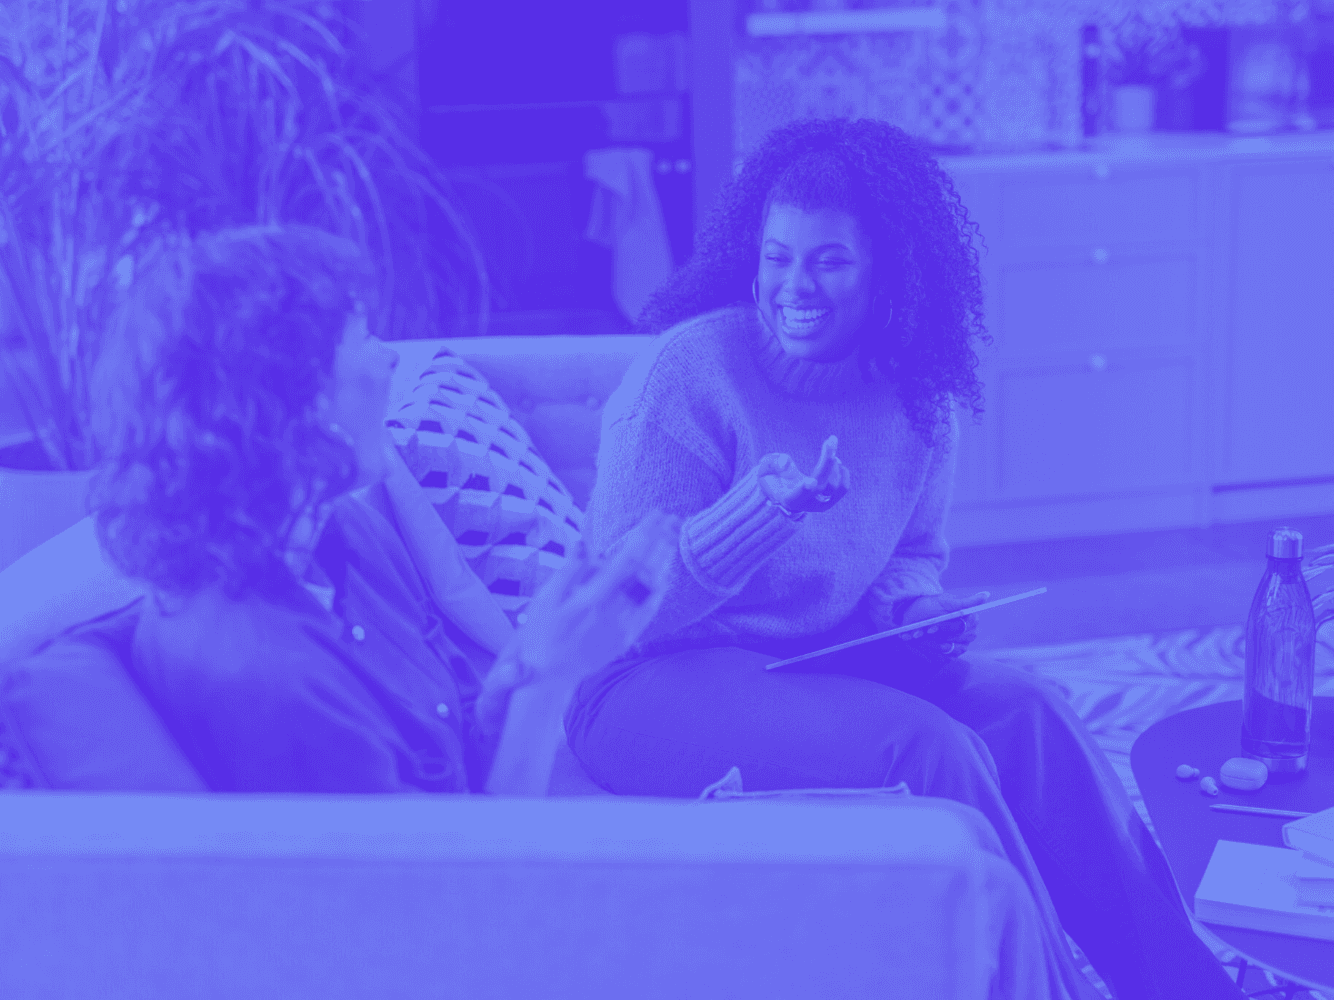 Duas mulheres sentadas em um sofá, conversando sorridentes. Uma delas segura um tablet enquanto parecem estar em uma reunião descontraída.